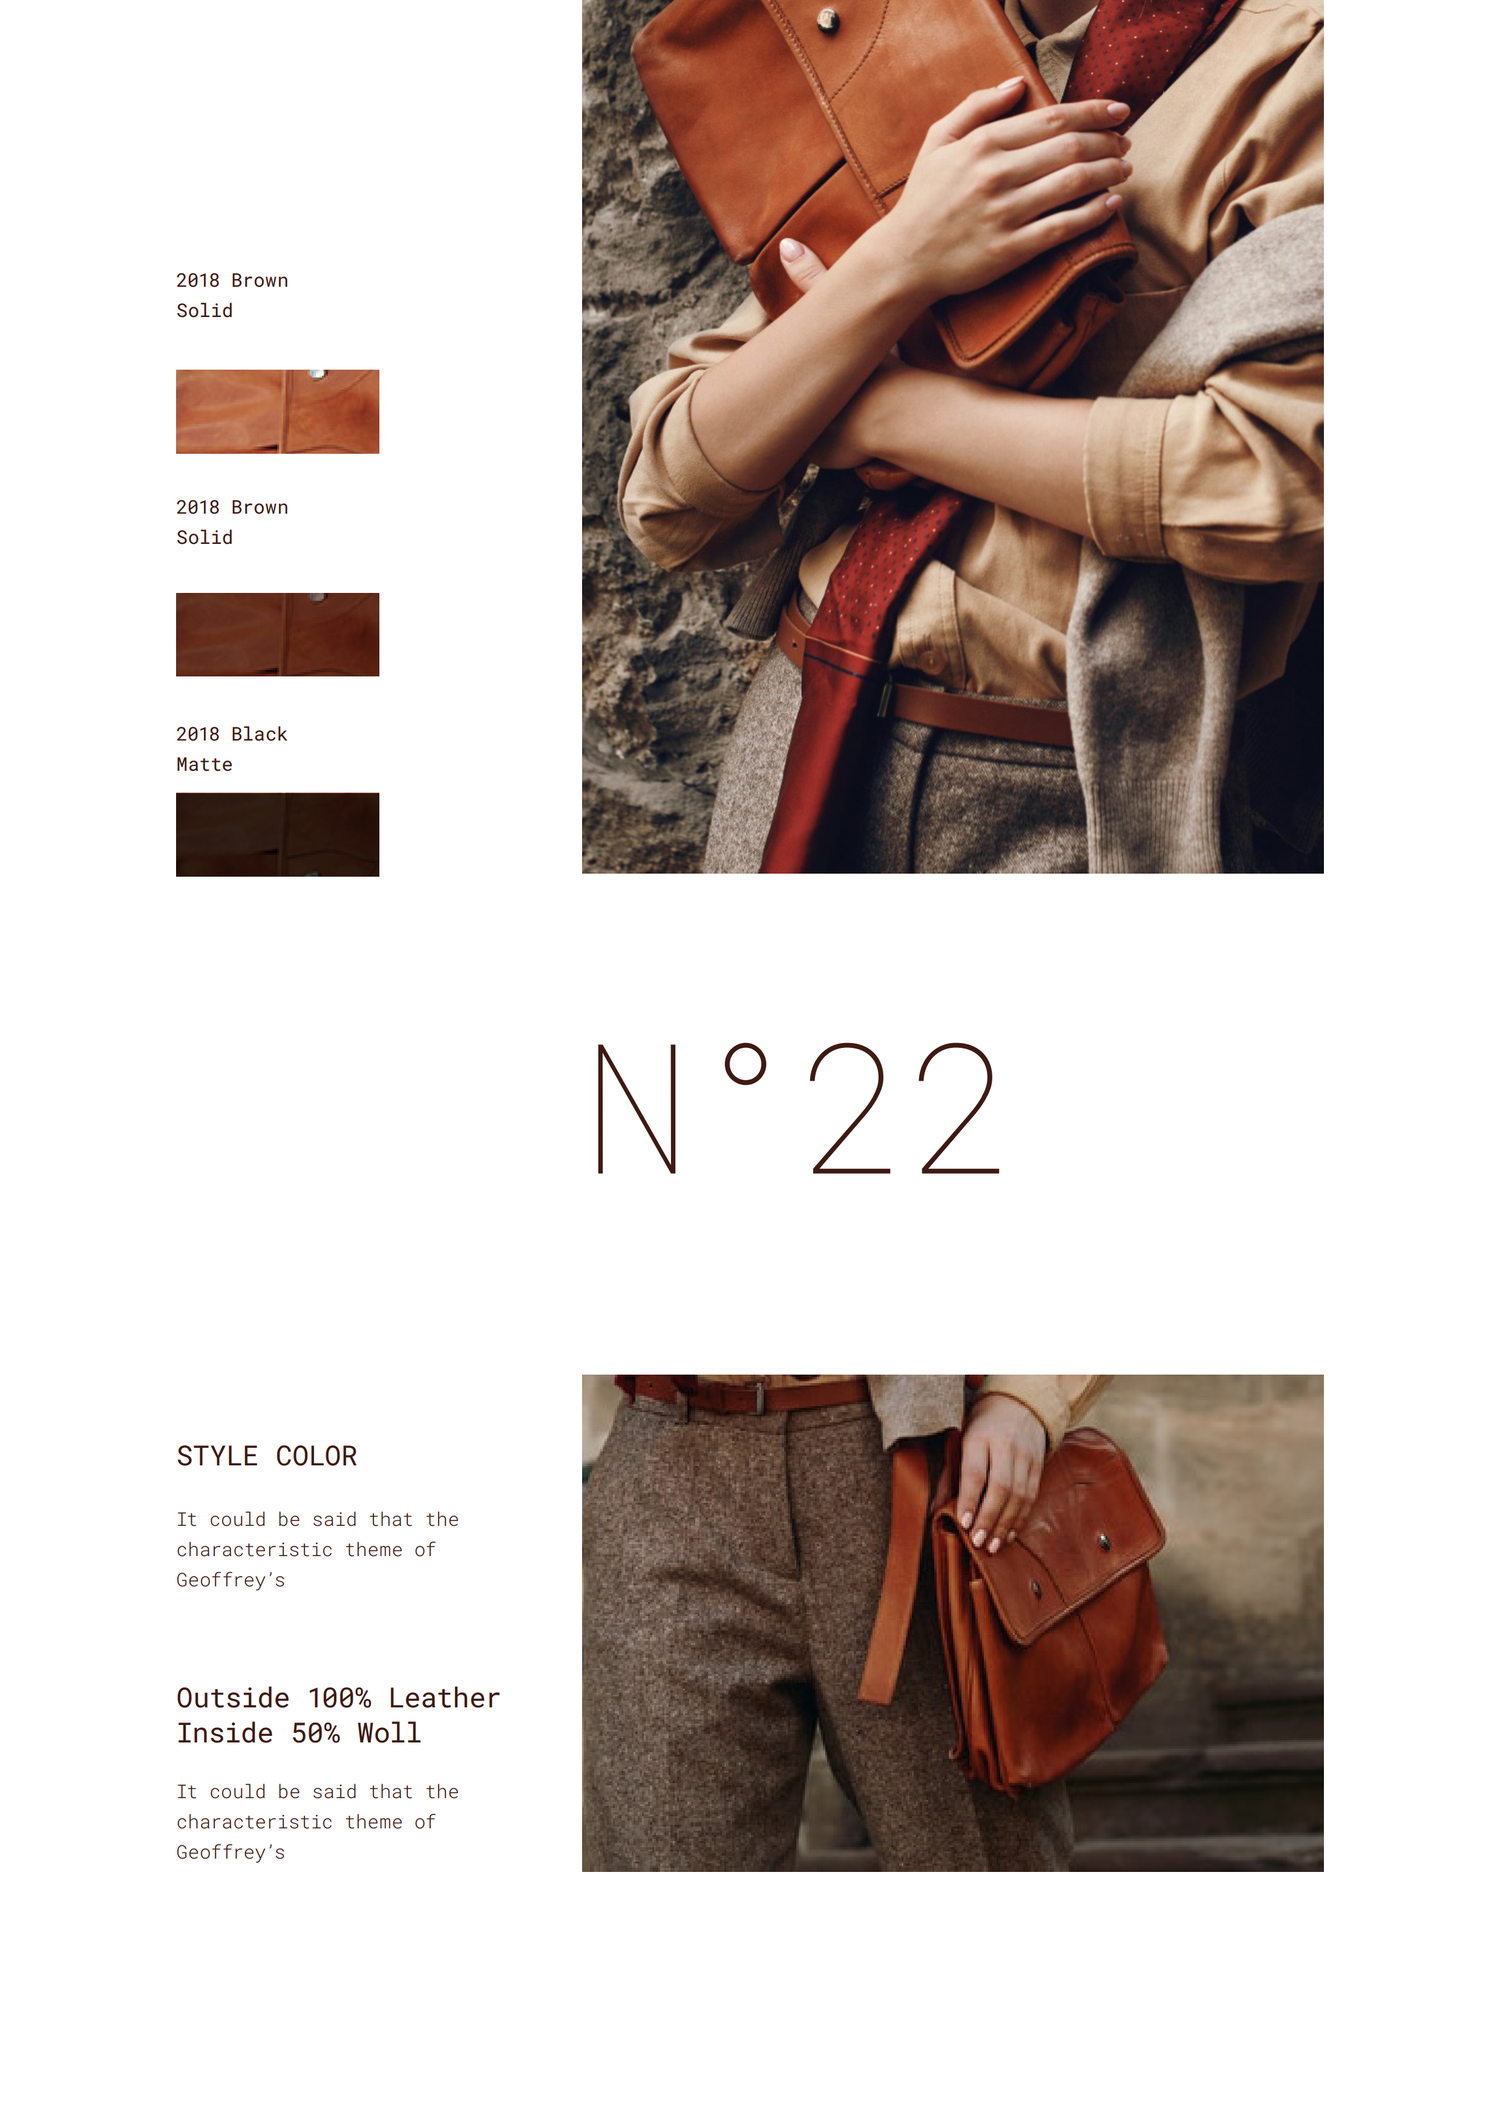 2267 奢侈品牌皮包产品画册VI设计PSD排版源文件Catalog Lookbook